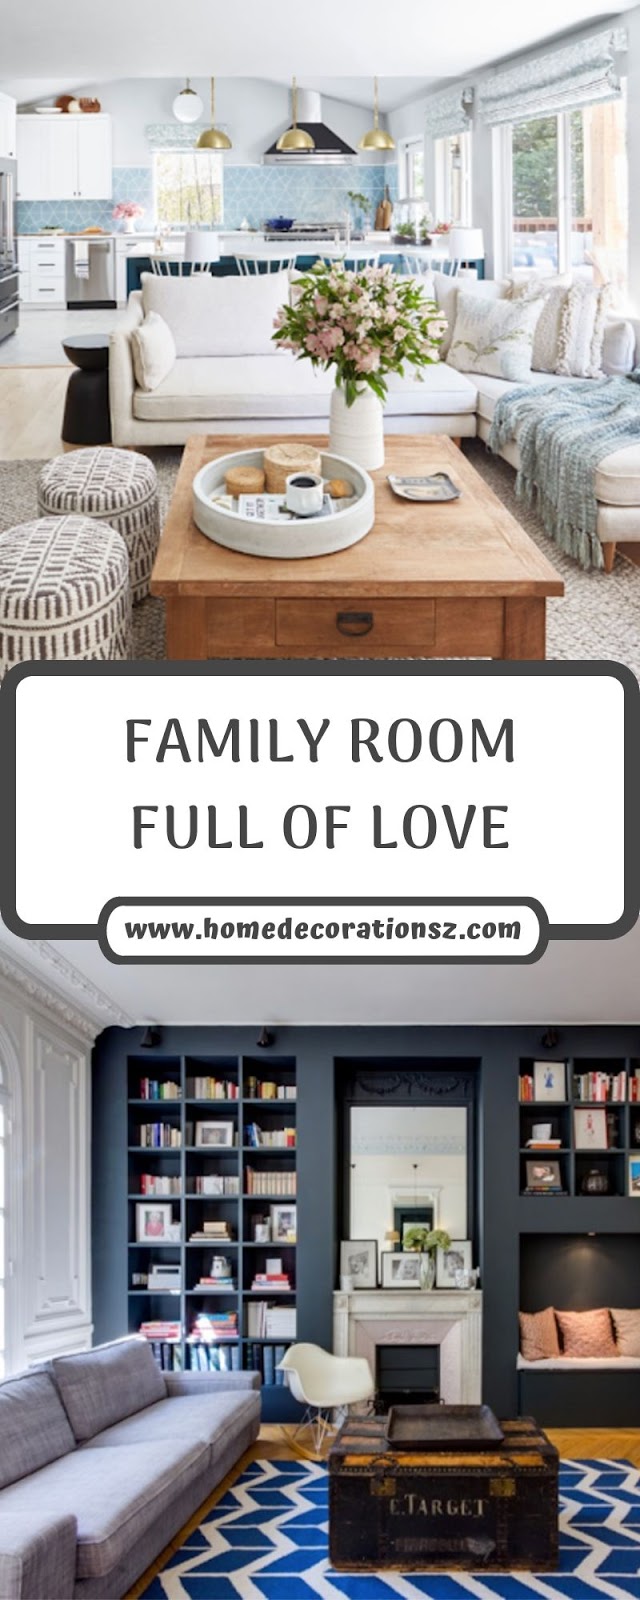 FAMILY ROOM FULL OF LOVE